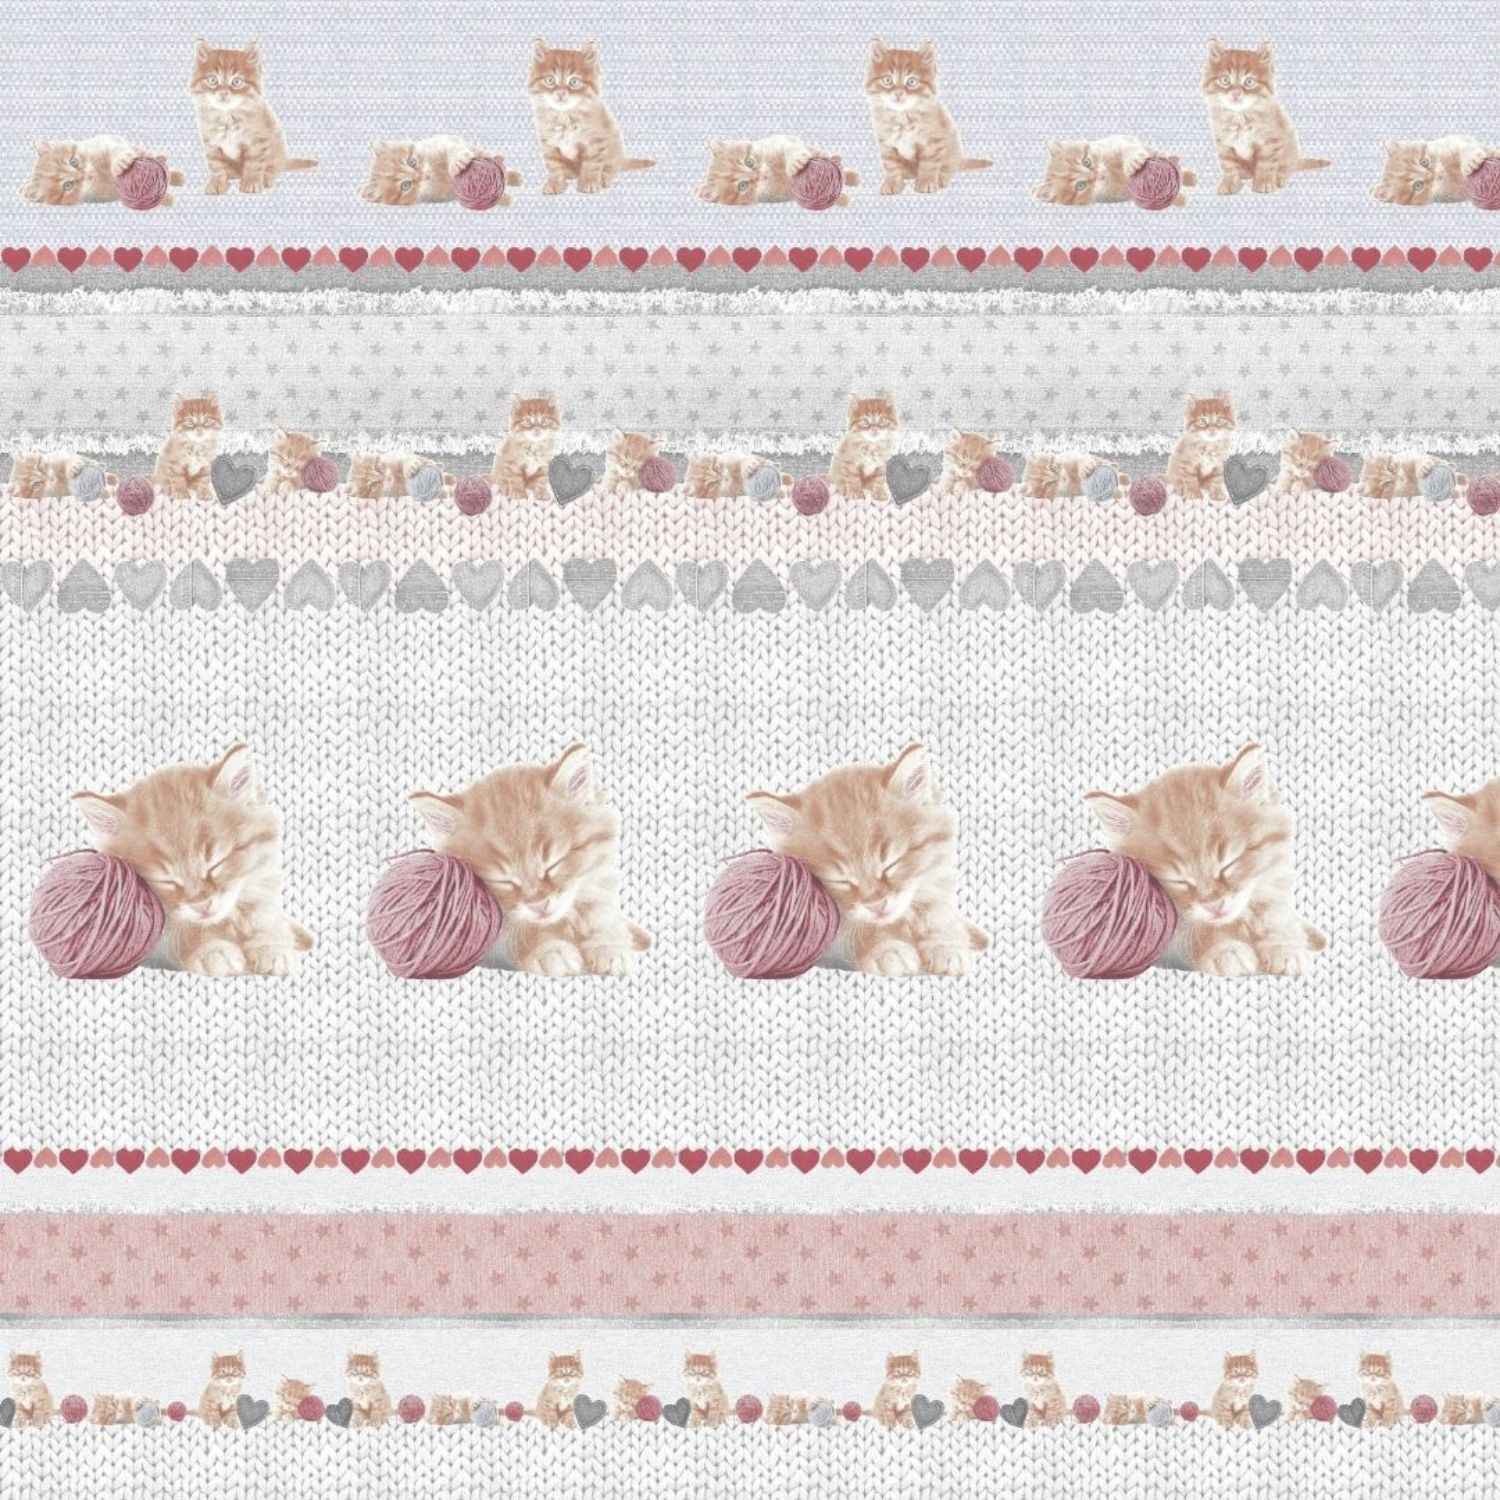 copripiumino-gatti-puro-cotone-quadrifoglio-gattini-gomitolo-rosa-grigio-cuoricini-pattern